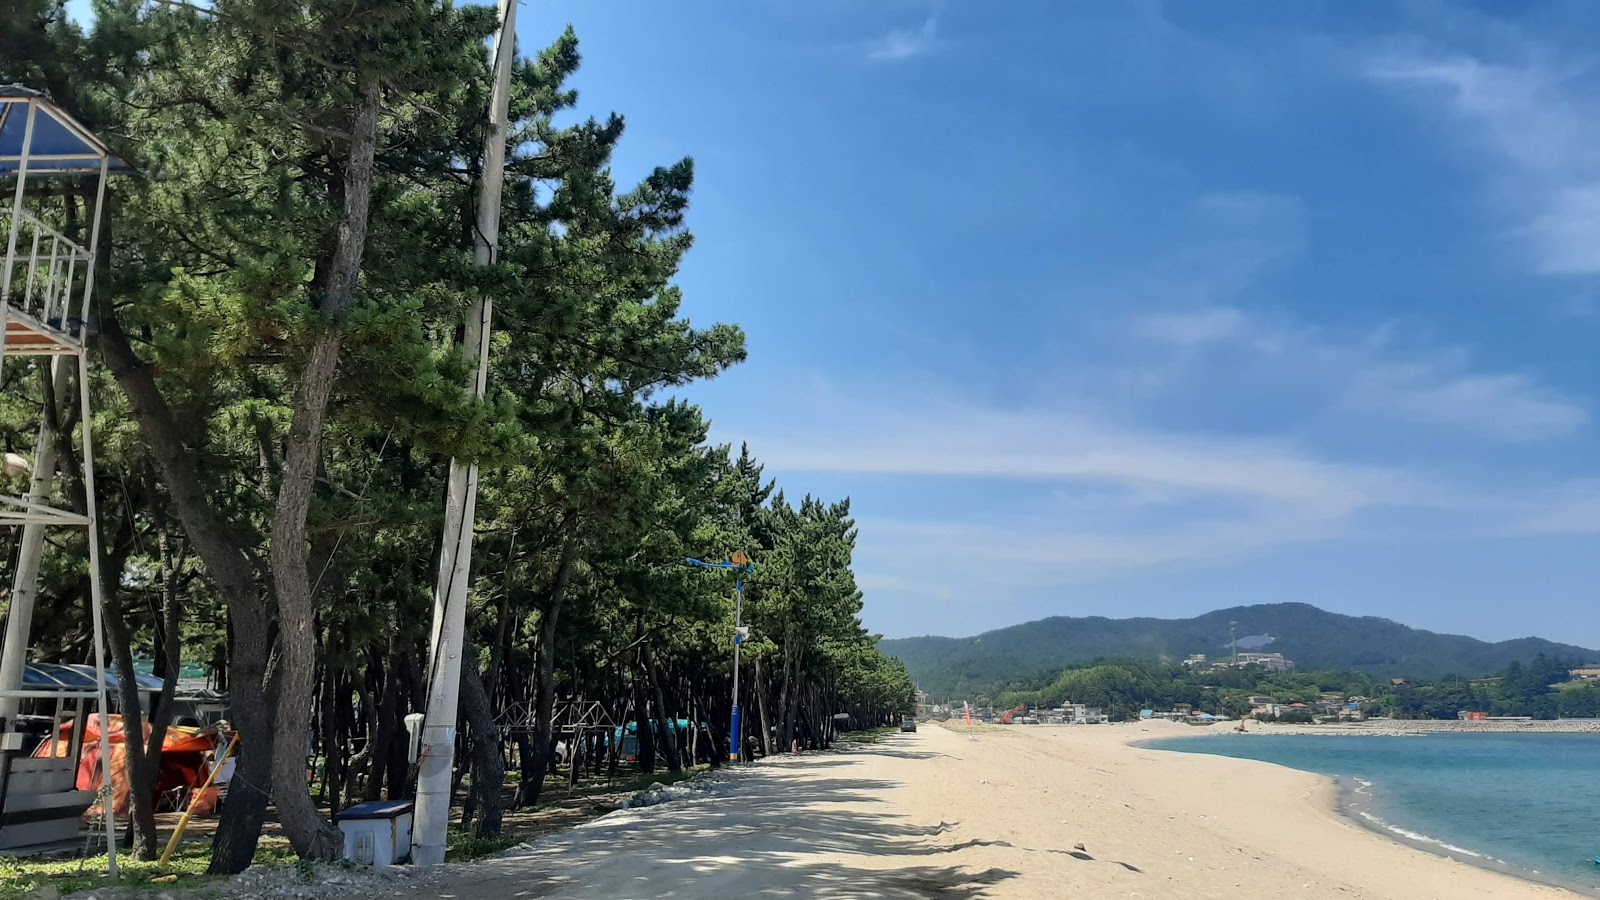 Wonpyeong Beach'in fotoğrafı uçurumlarla desteklenmiş